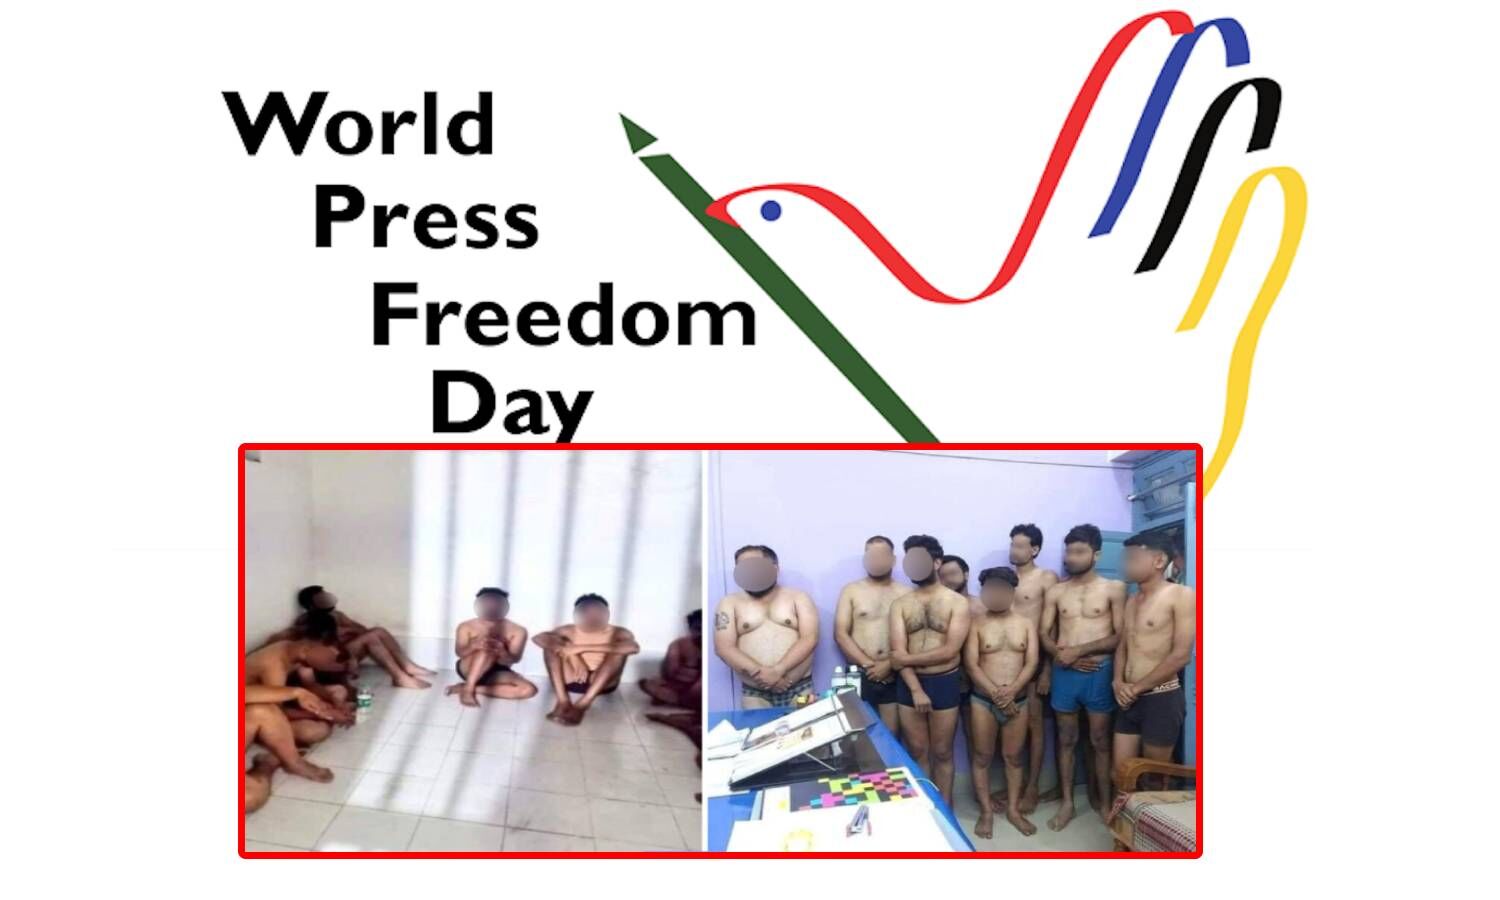 World Press Freedom Day : विश्व प्रेस स्वतंत्रता दिवस पर यह तस्वीर भारत में पत्रकारिता की दशा को बयां करता है, यह तस्वीर भारत ही नहीं पूरी दुनिया में खुद को पत्रकार कहने वालों के लिए शर्मनाक है